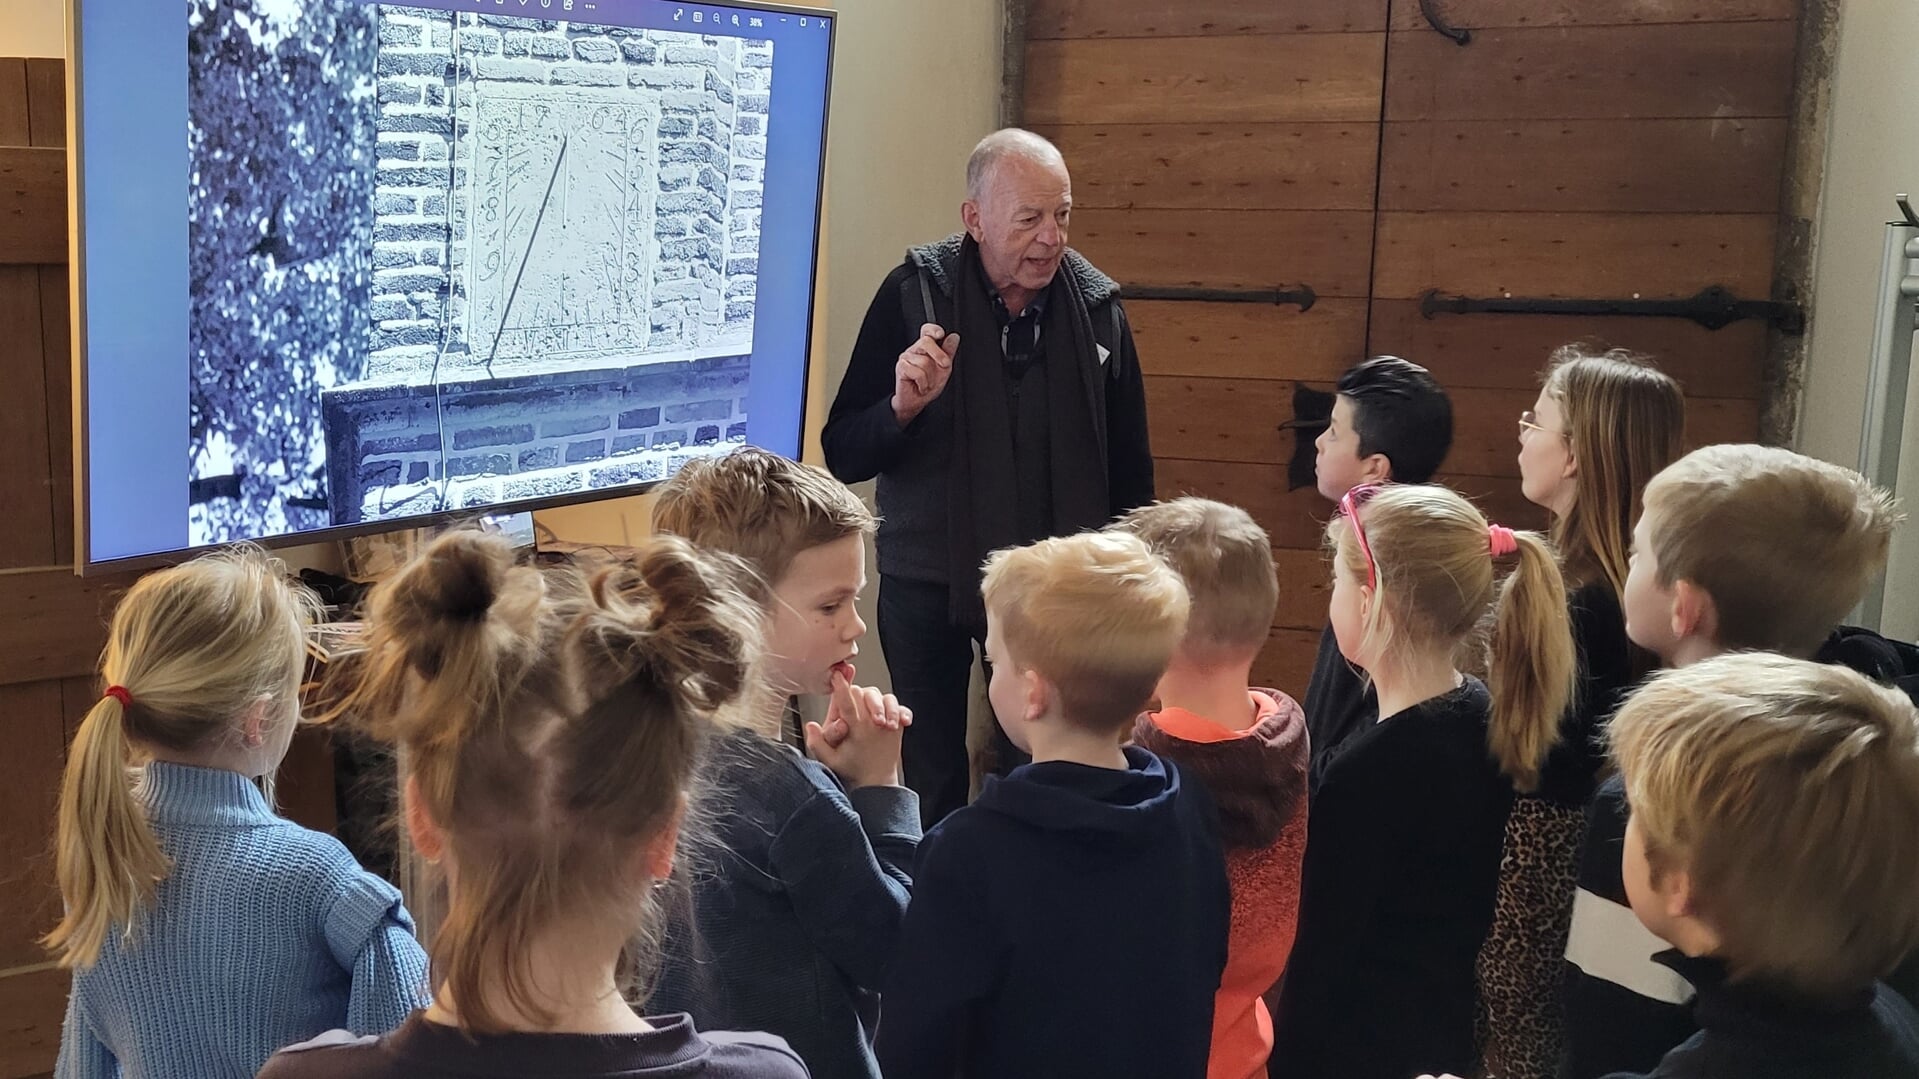 De leerlingen van IKC het Sterrenpalet luisteren aandachtig naar de uitleg in De Oude Mattheüs. Foto: PR